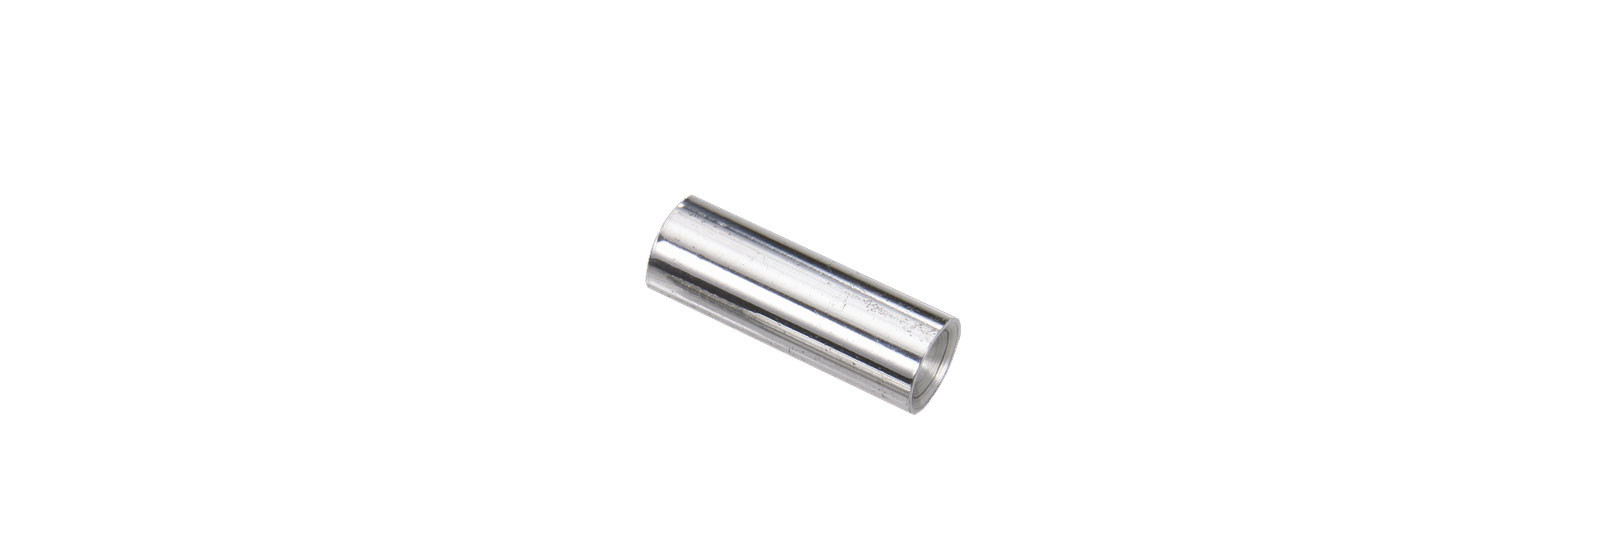 Aluminium rod tip female thread